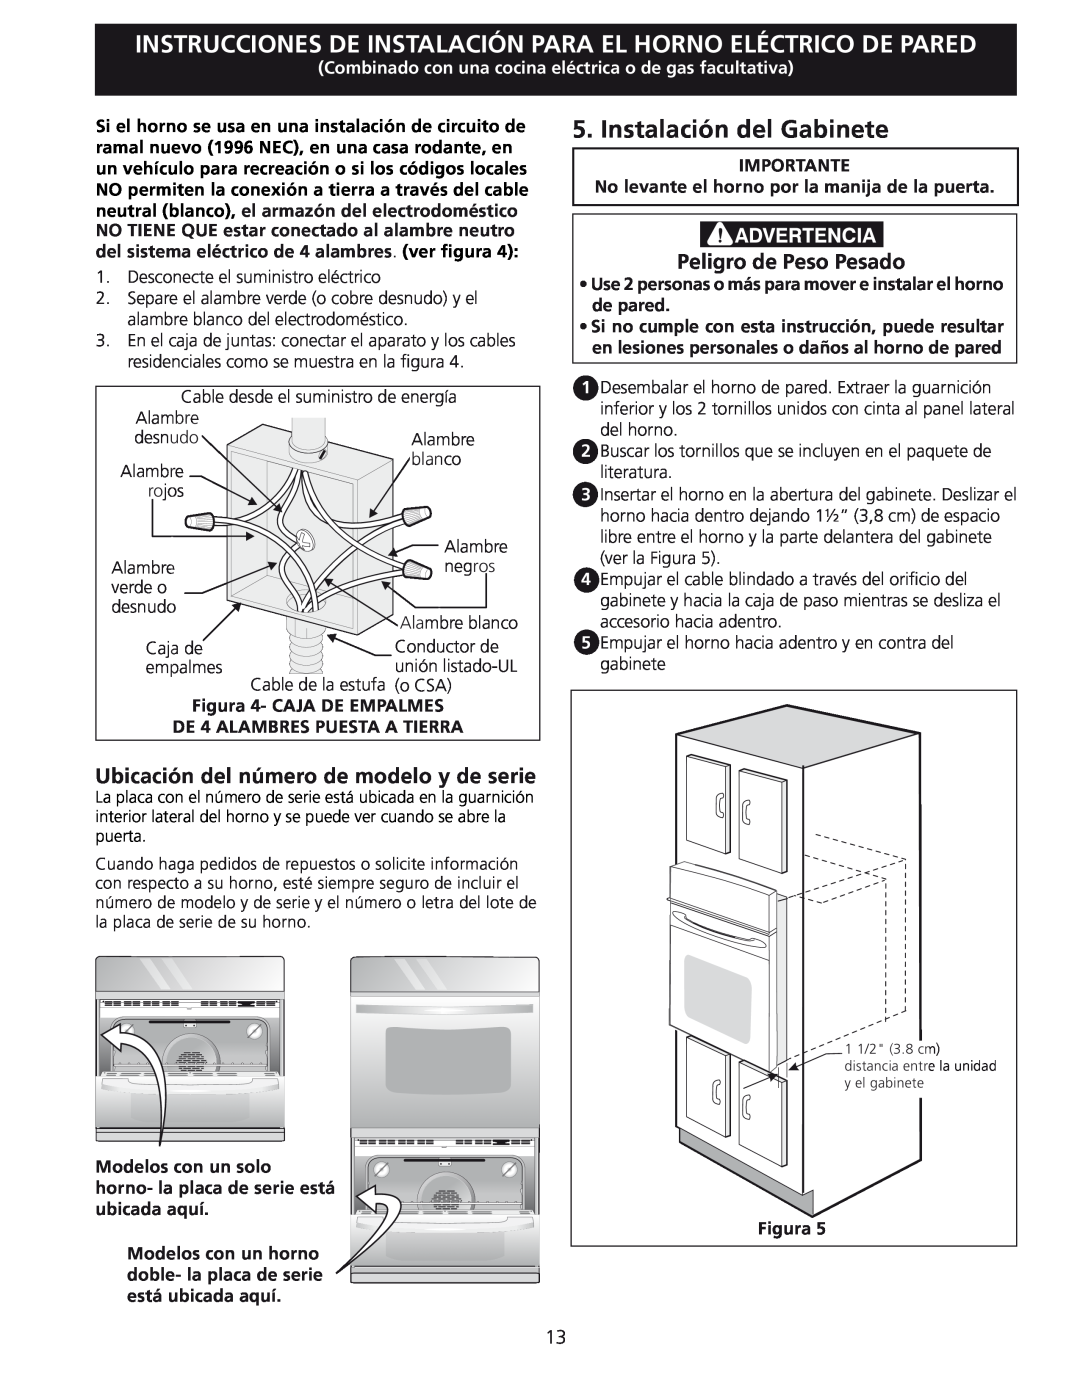 Frigidaire 318201532 manual Instalación del Gabinete, Ubicación del número de modelo y de serie, Peligro de Peso Pesado 